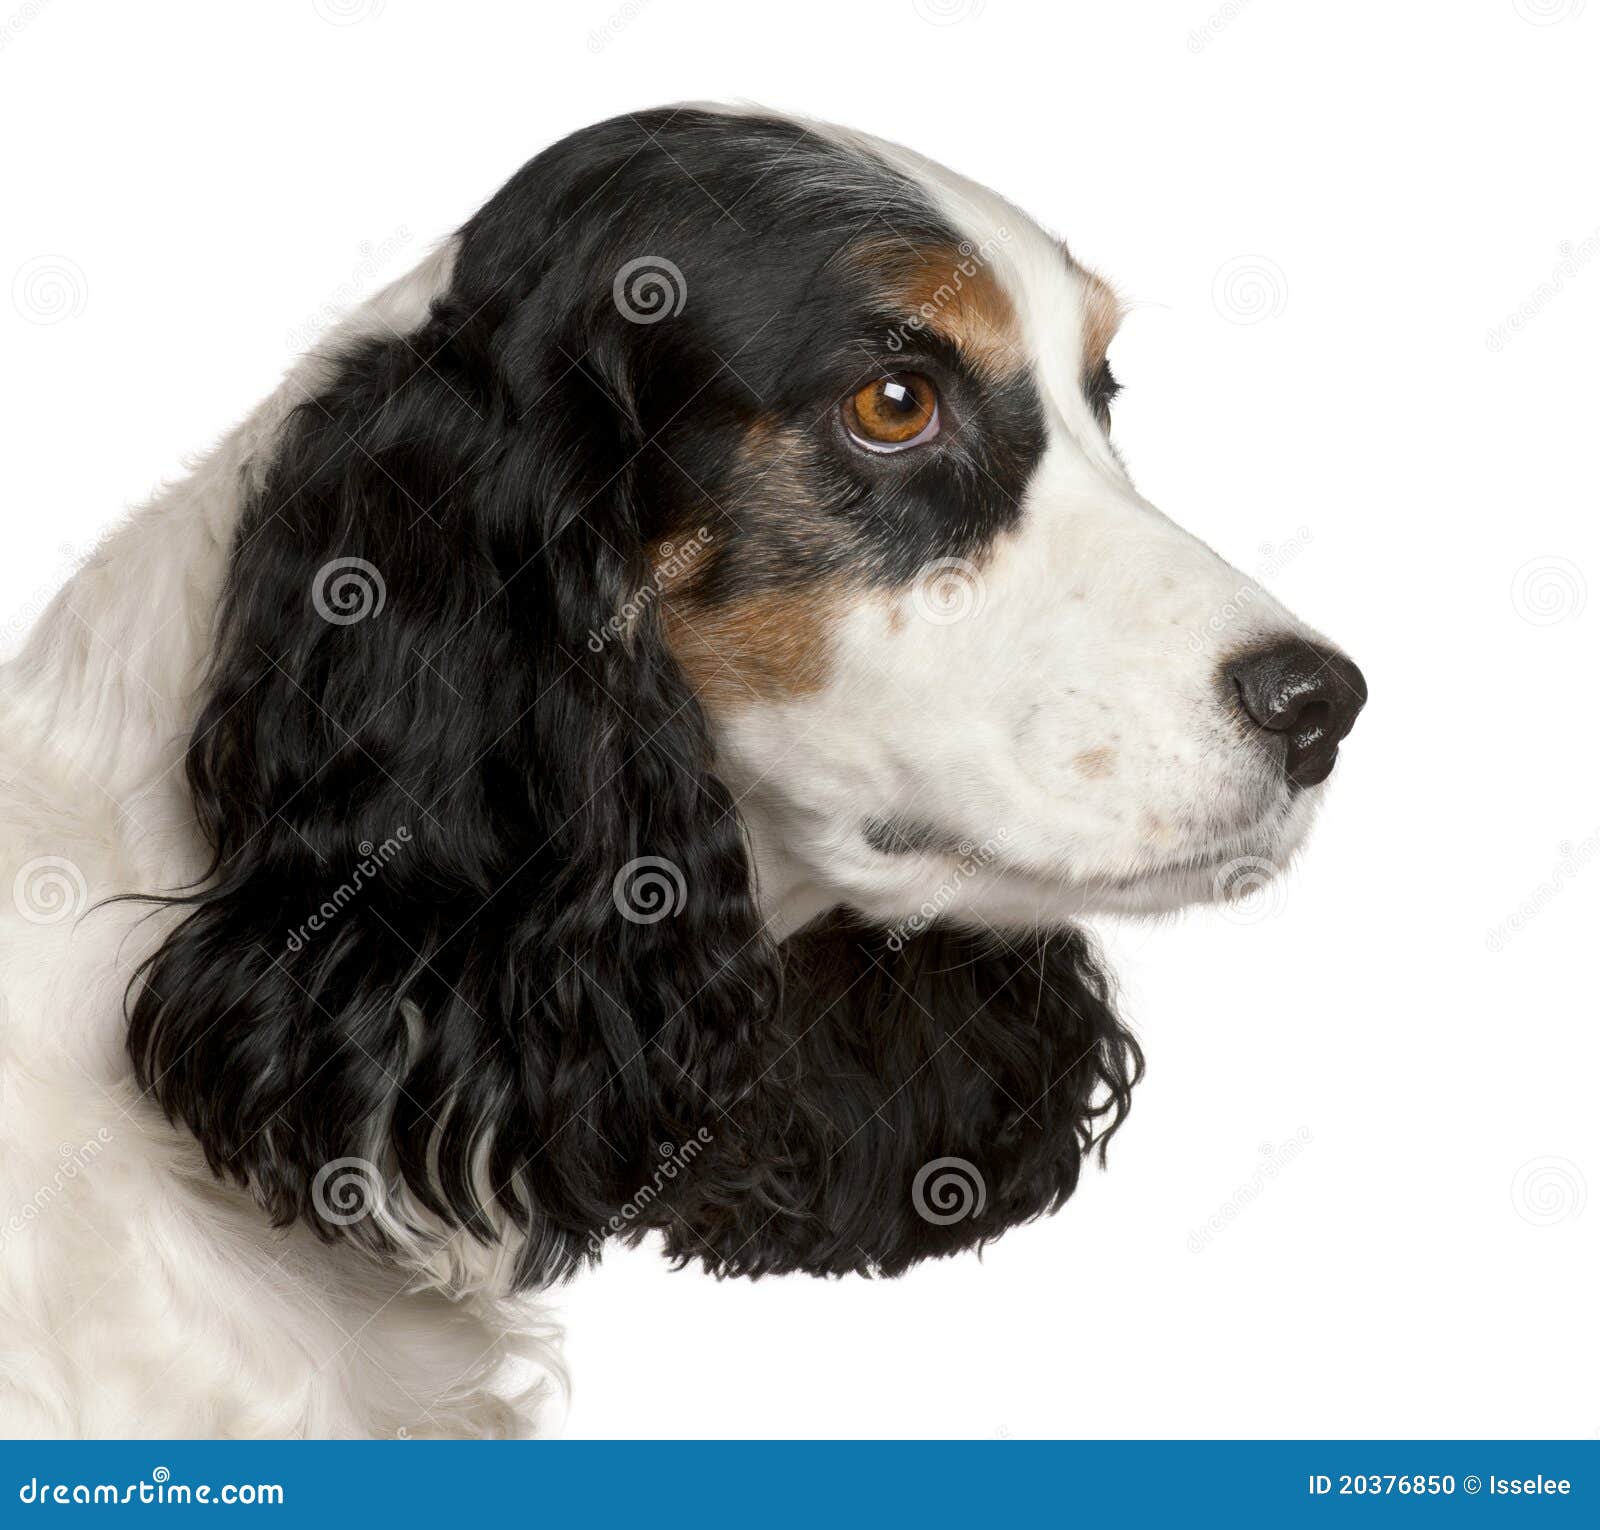 Cocker spaniel dog stock image. Image of house, canine - 39653187